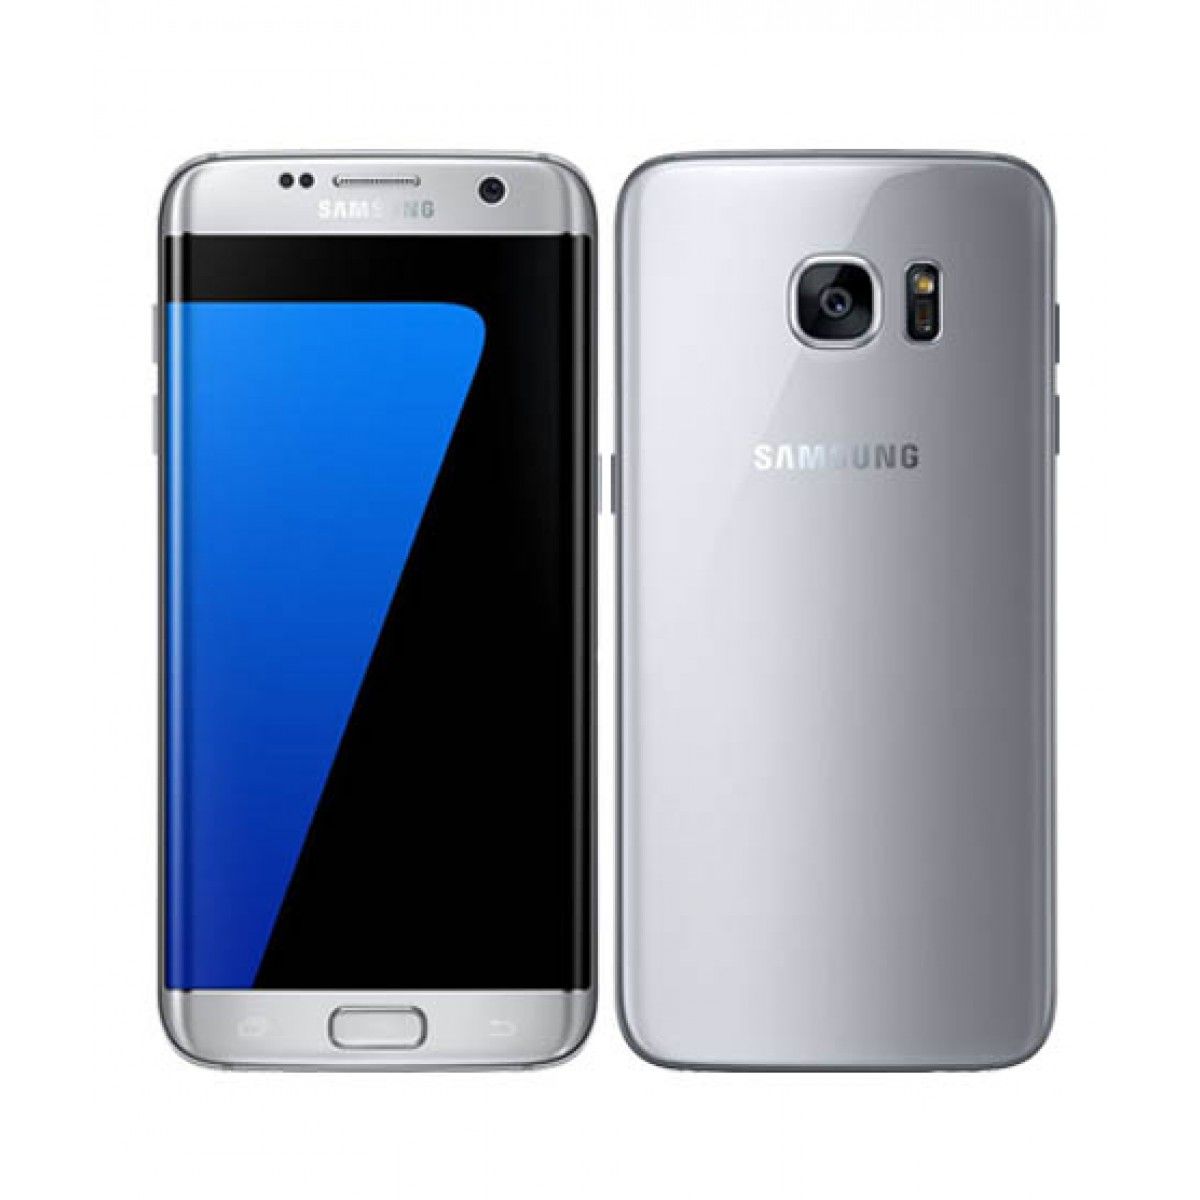 Samsung Galaxy S7 edge Titanium Silver (сток А)